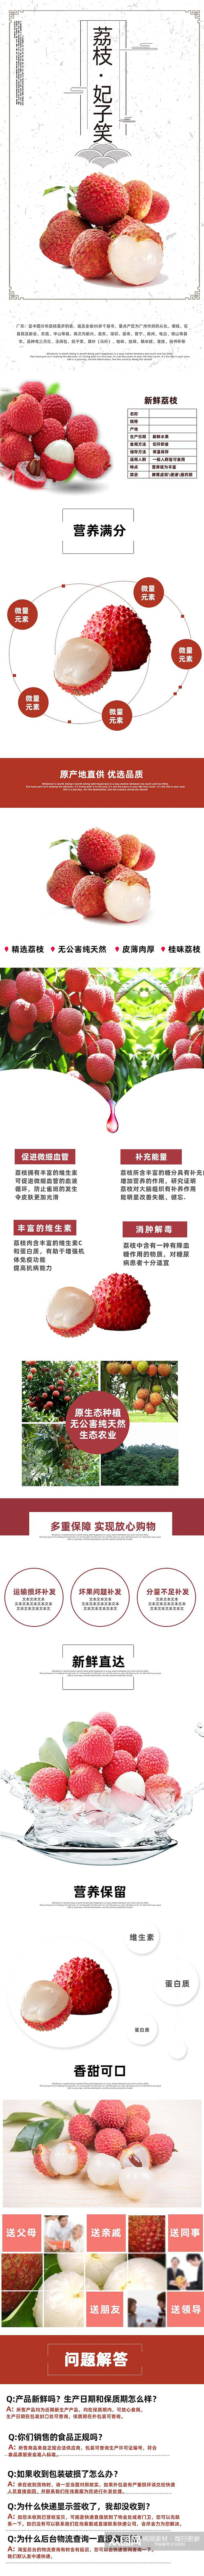 中国风荔枝水果详情页素材